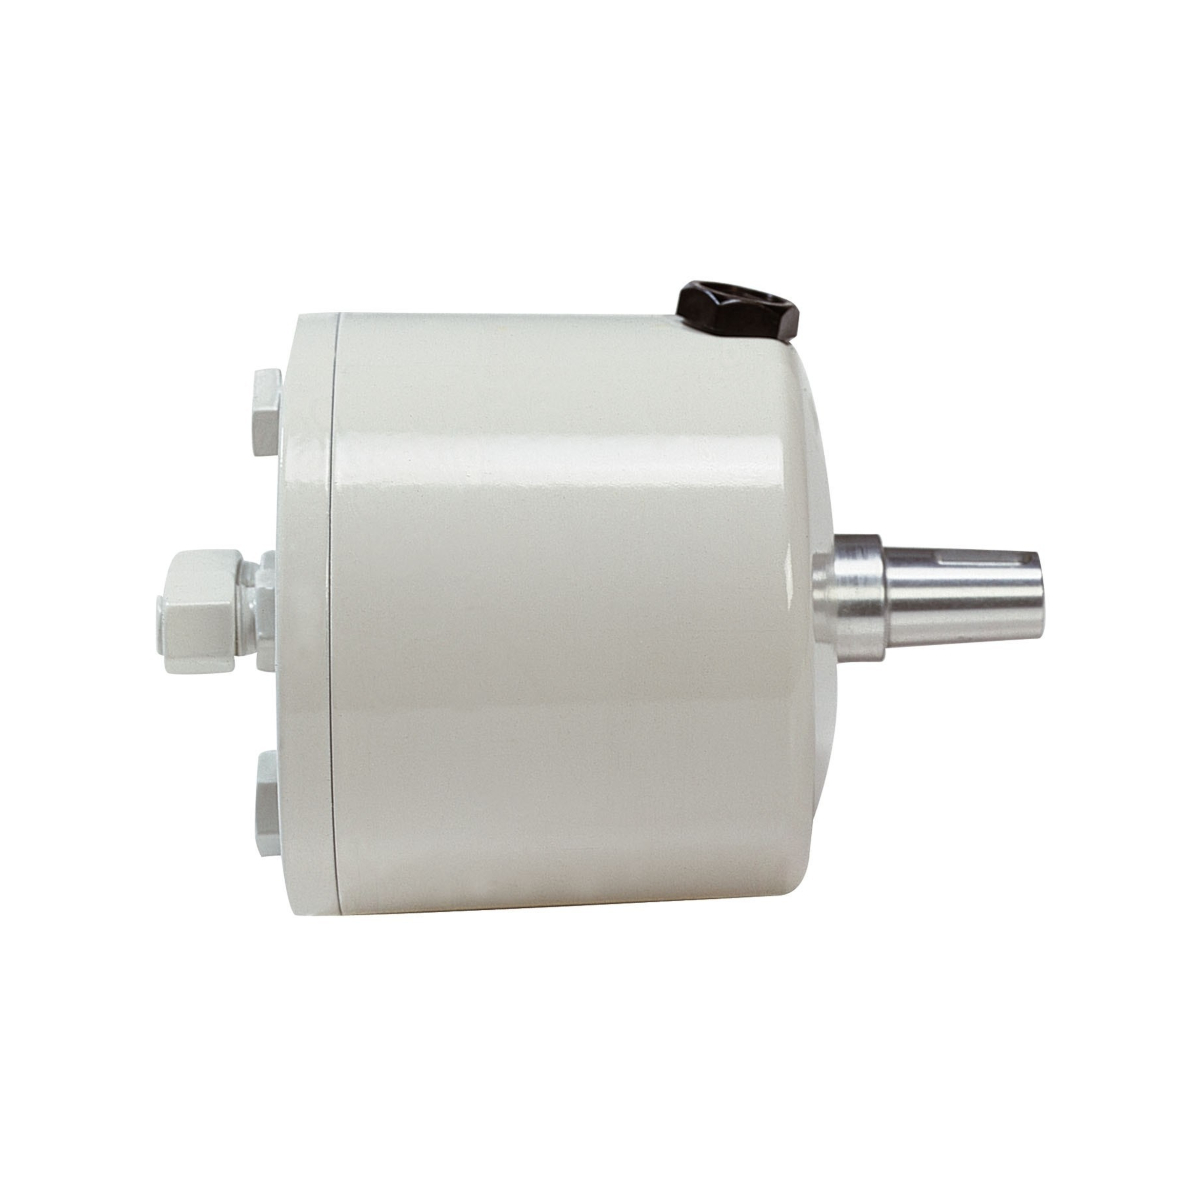 Vetus pompe hydraulique type htp42, blanc, pour tuyau ø 10 mm (synthétique ou cuivre)